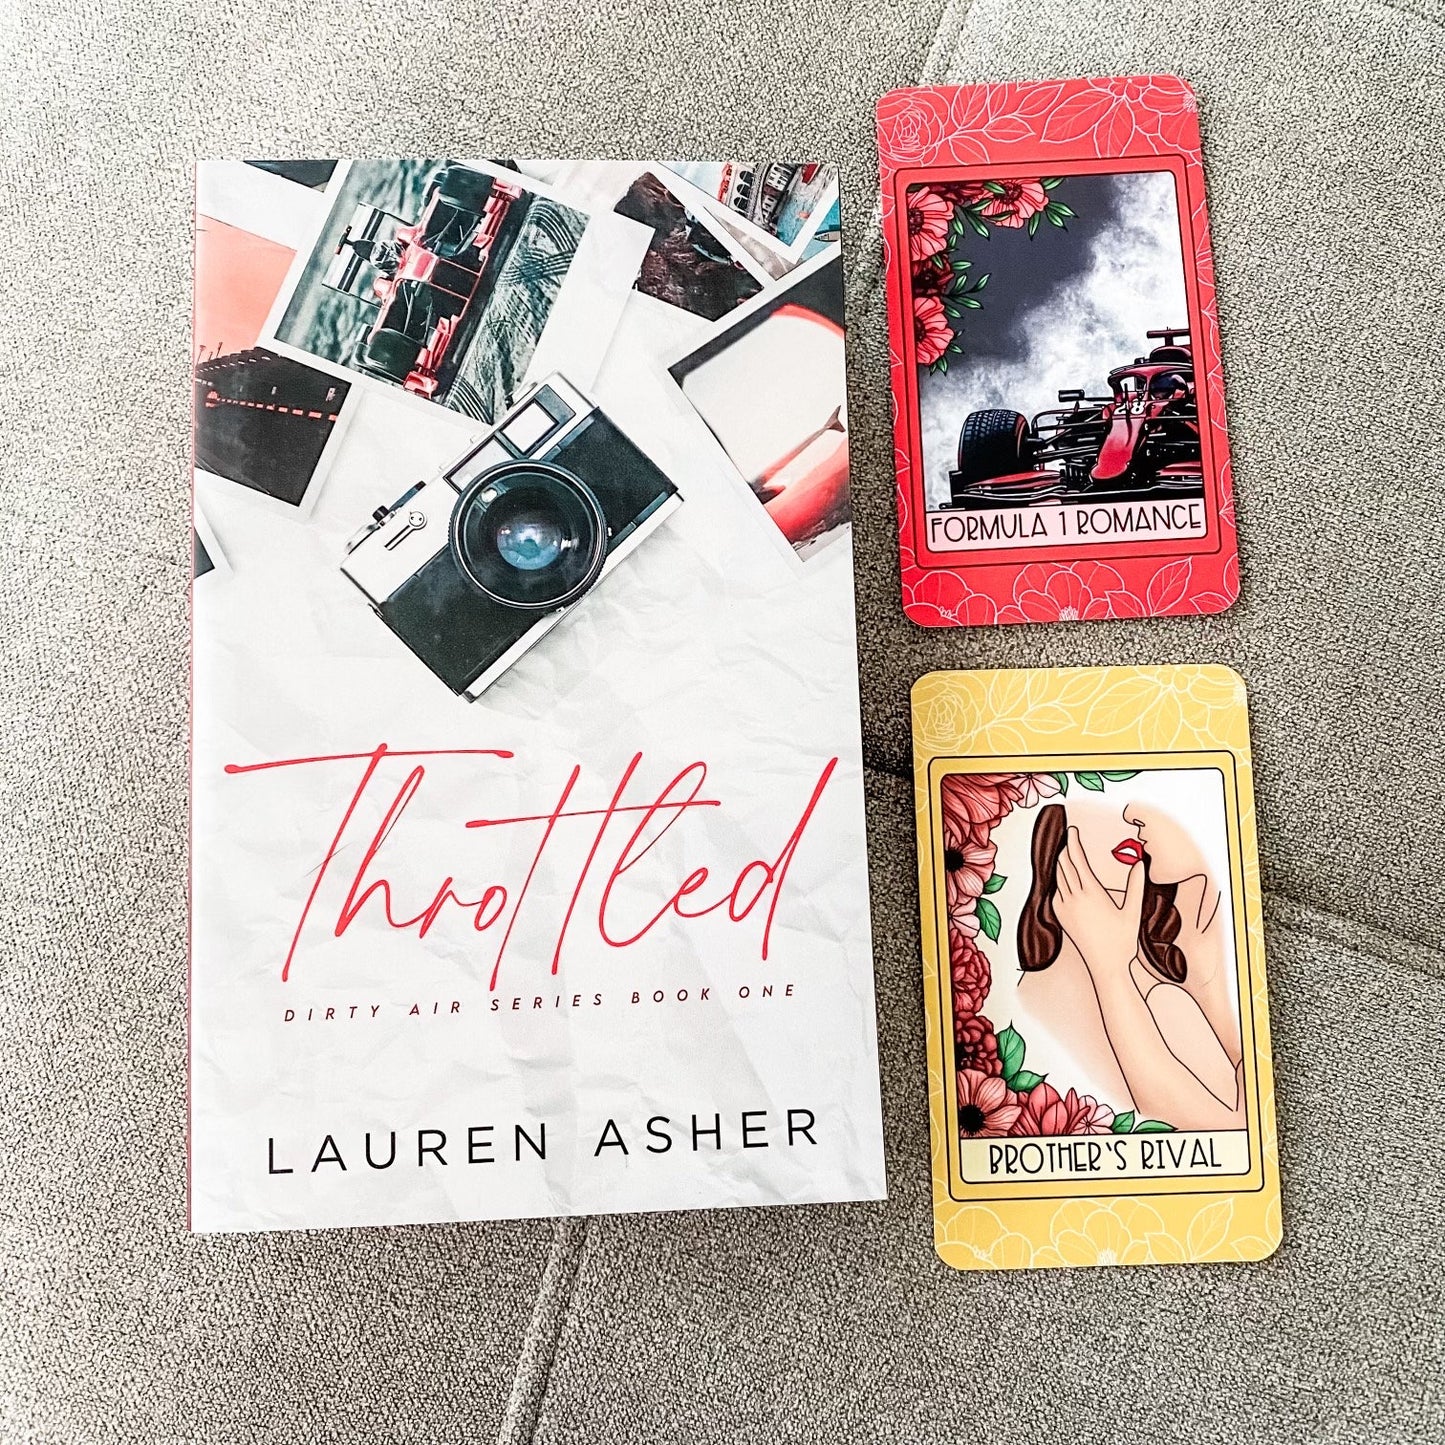 The Dirty Air Series by Lauren Asher Tarot Card Set